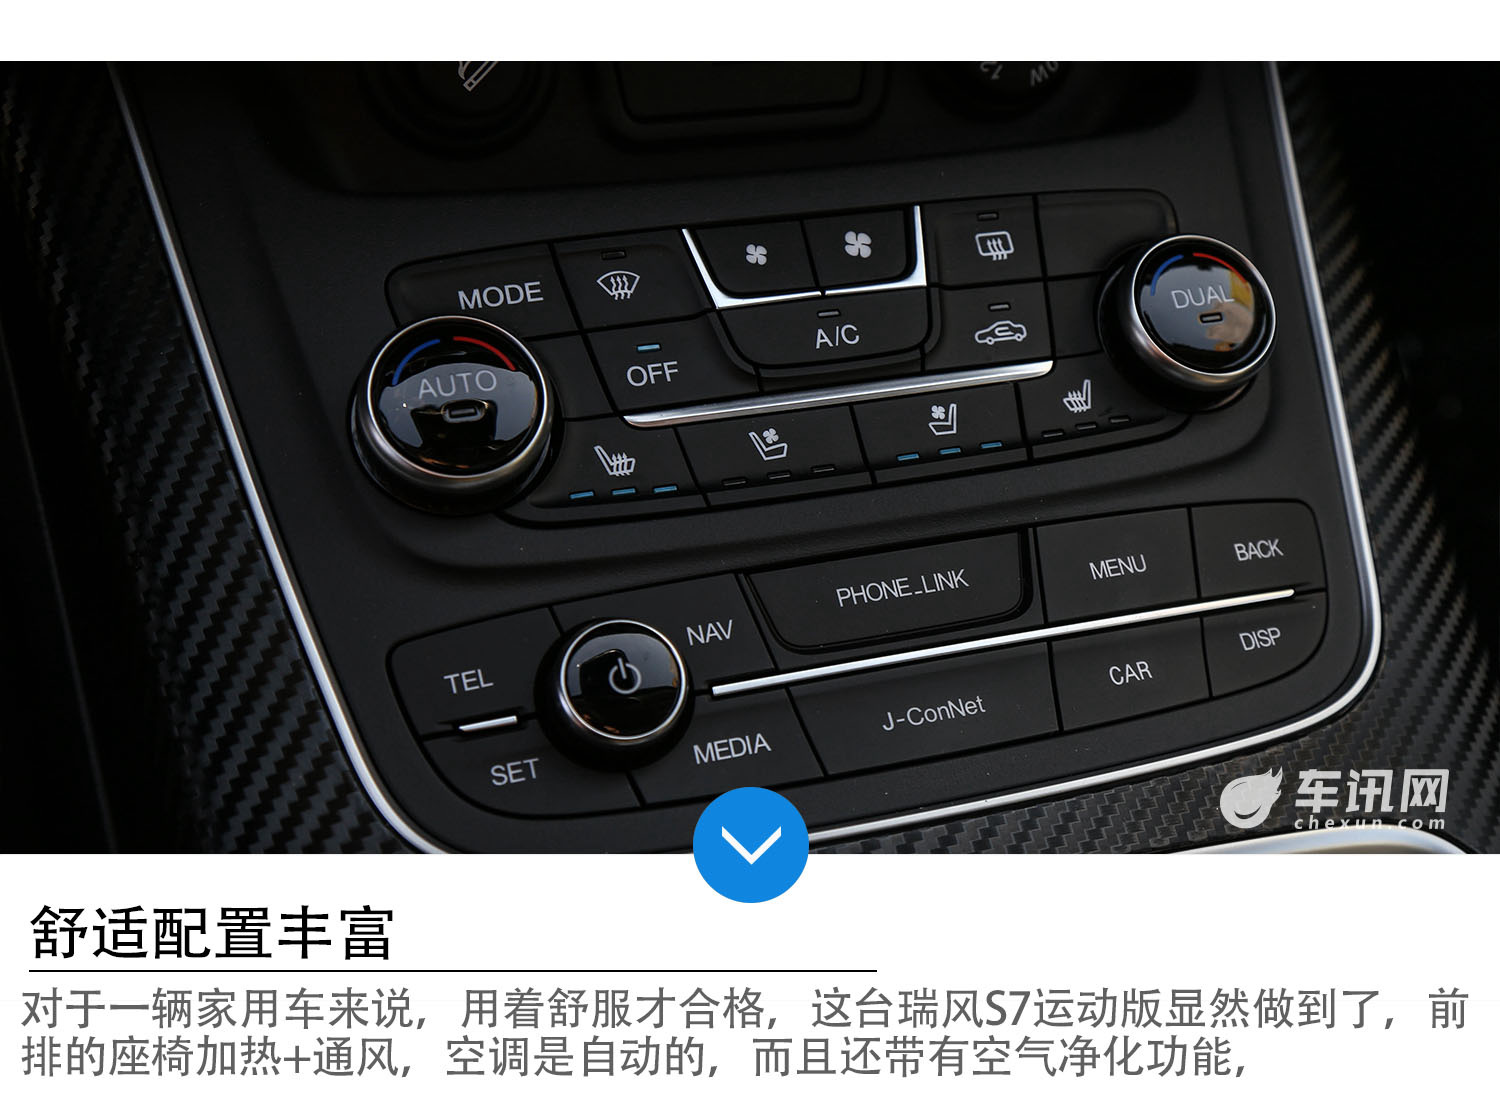 安全更实用的SUV 试驾江淮瑞风S7运动版